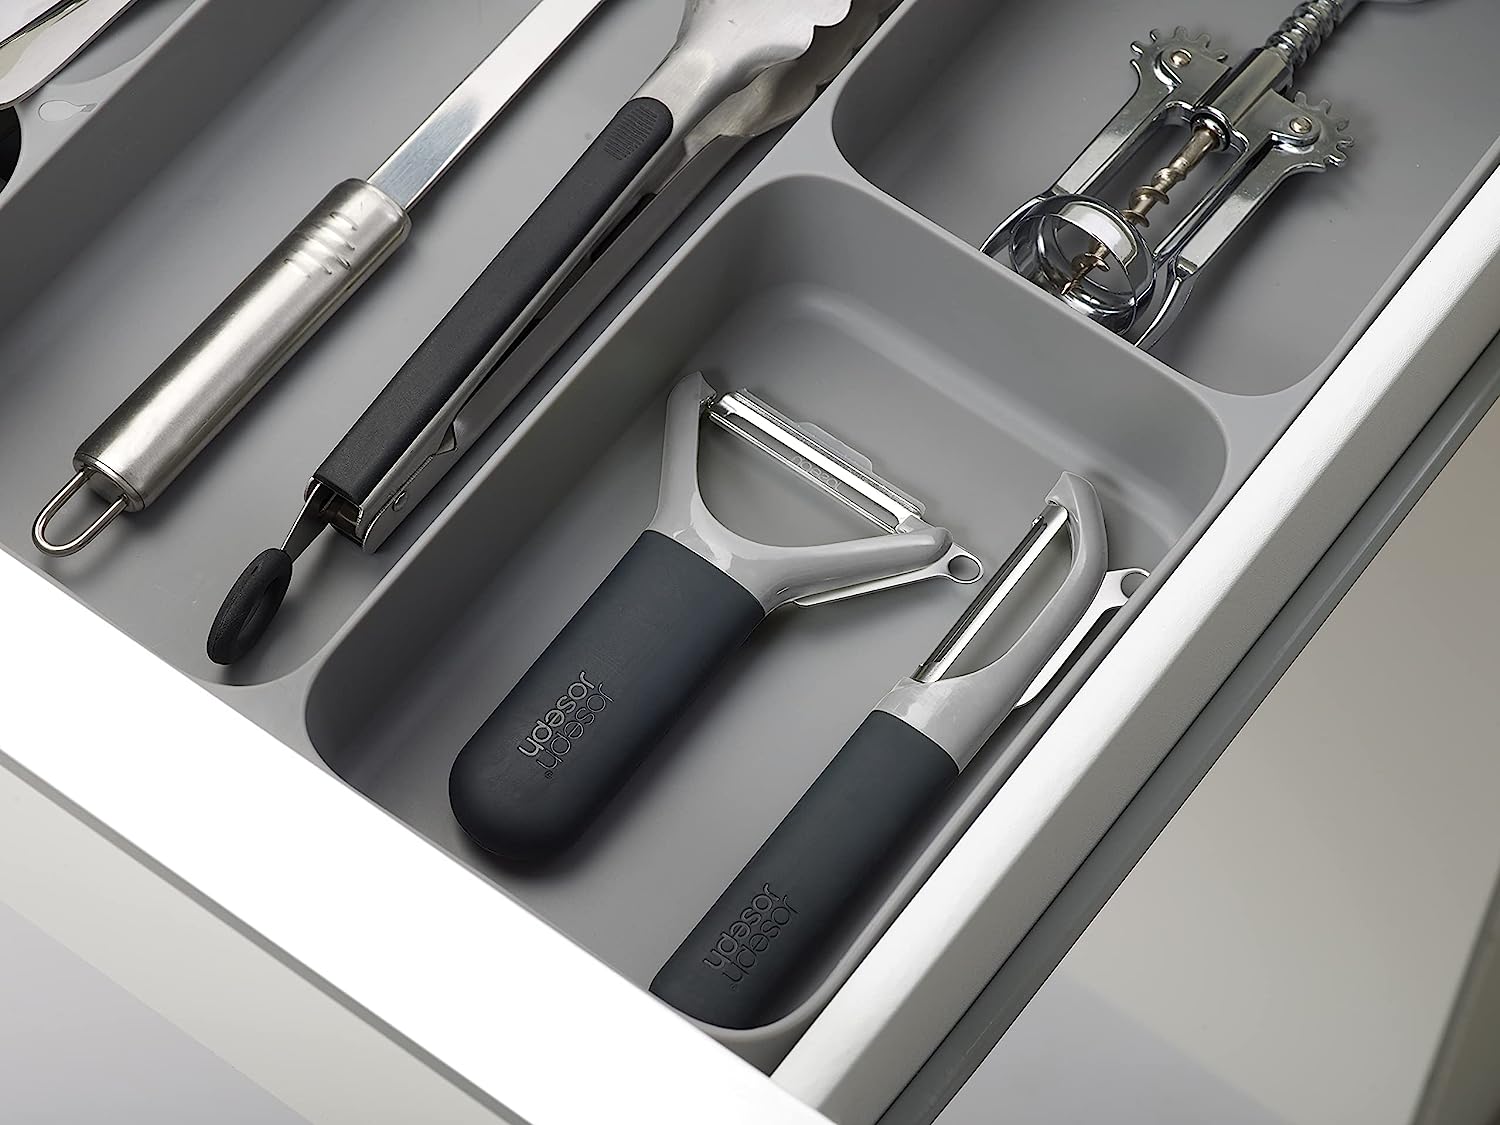 Joseph Joseph DrawerStore Cutlery, Kitchen Utensils and Cooking Utensil Gadget Accessories Organiser, in drawer storage - Grey 5